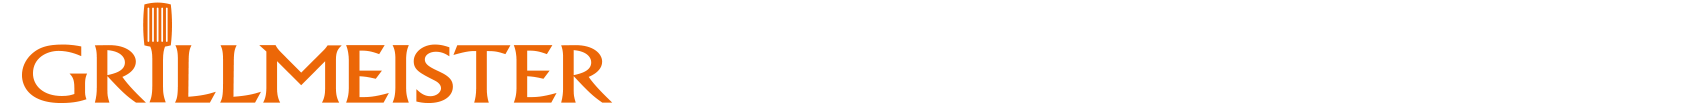 Grillmeister Imbiss auf dem Ulmer Weihnachtsmarkt Logo